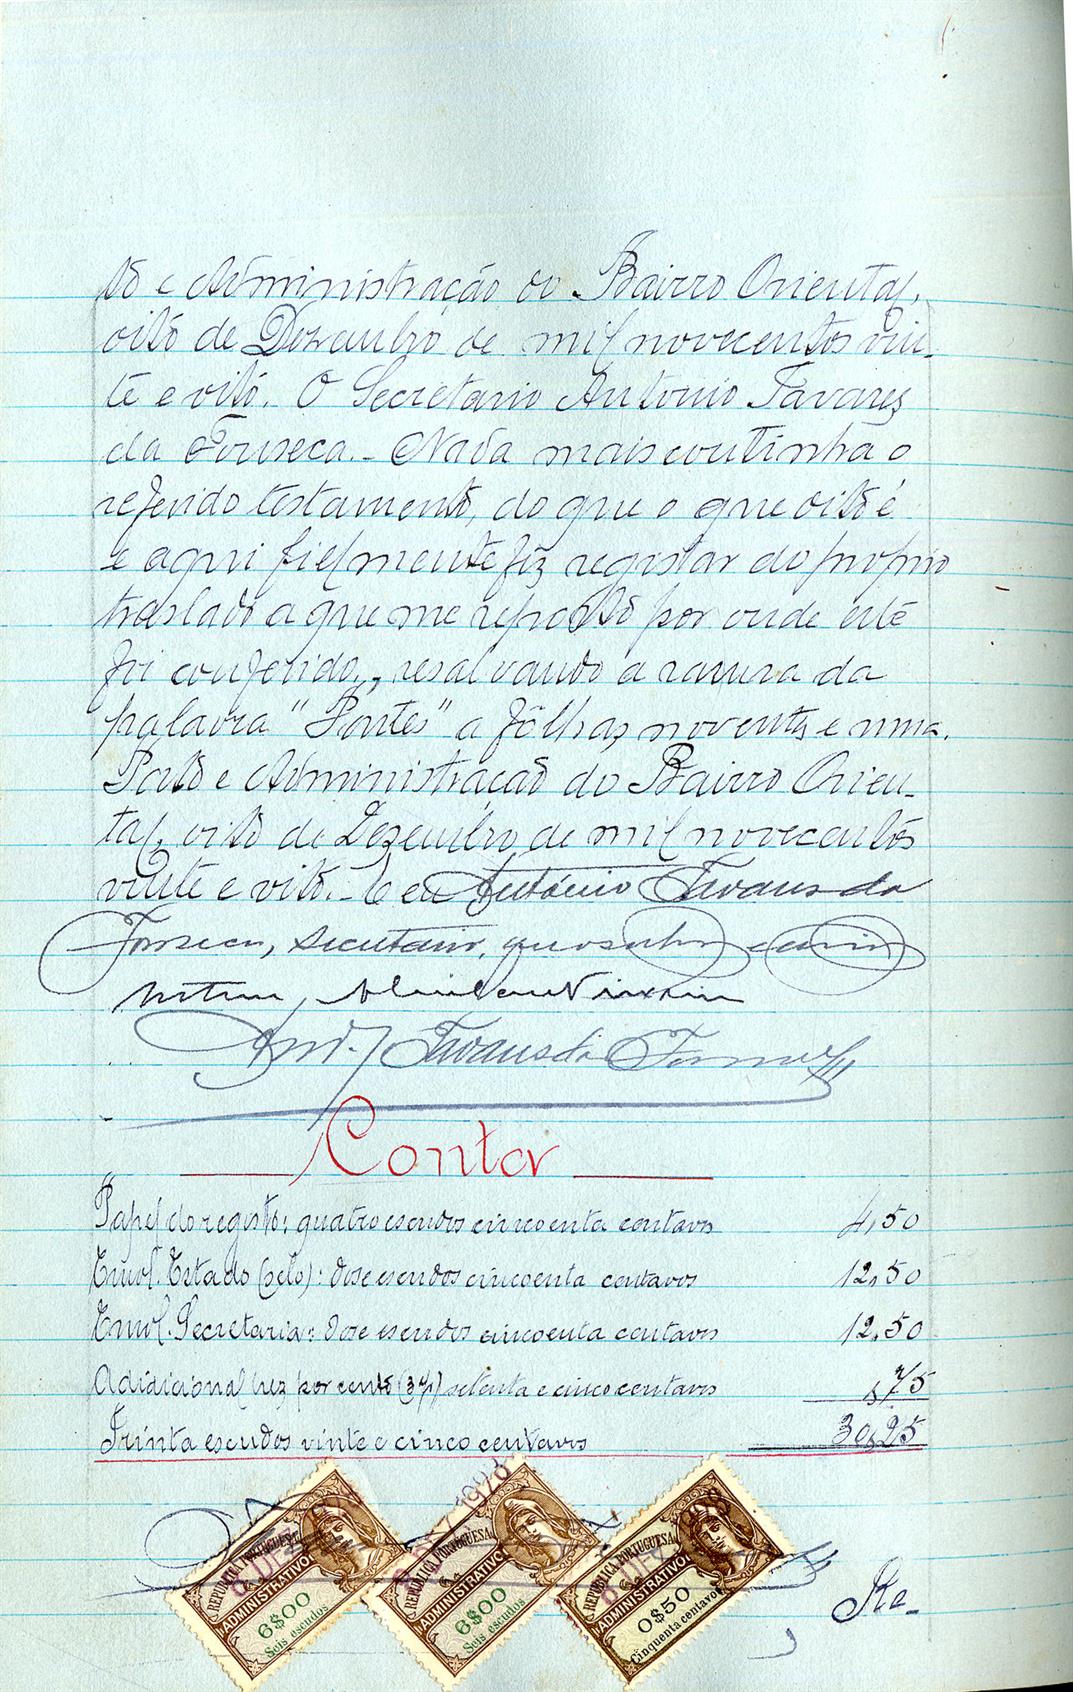 Registo do testamento com que faleceu Adalgisa Antonieta Gonçalves, casada com João Afonso dos Santos, capitalista